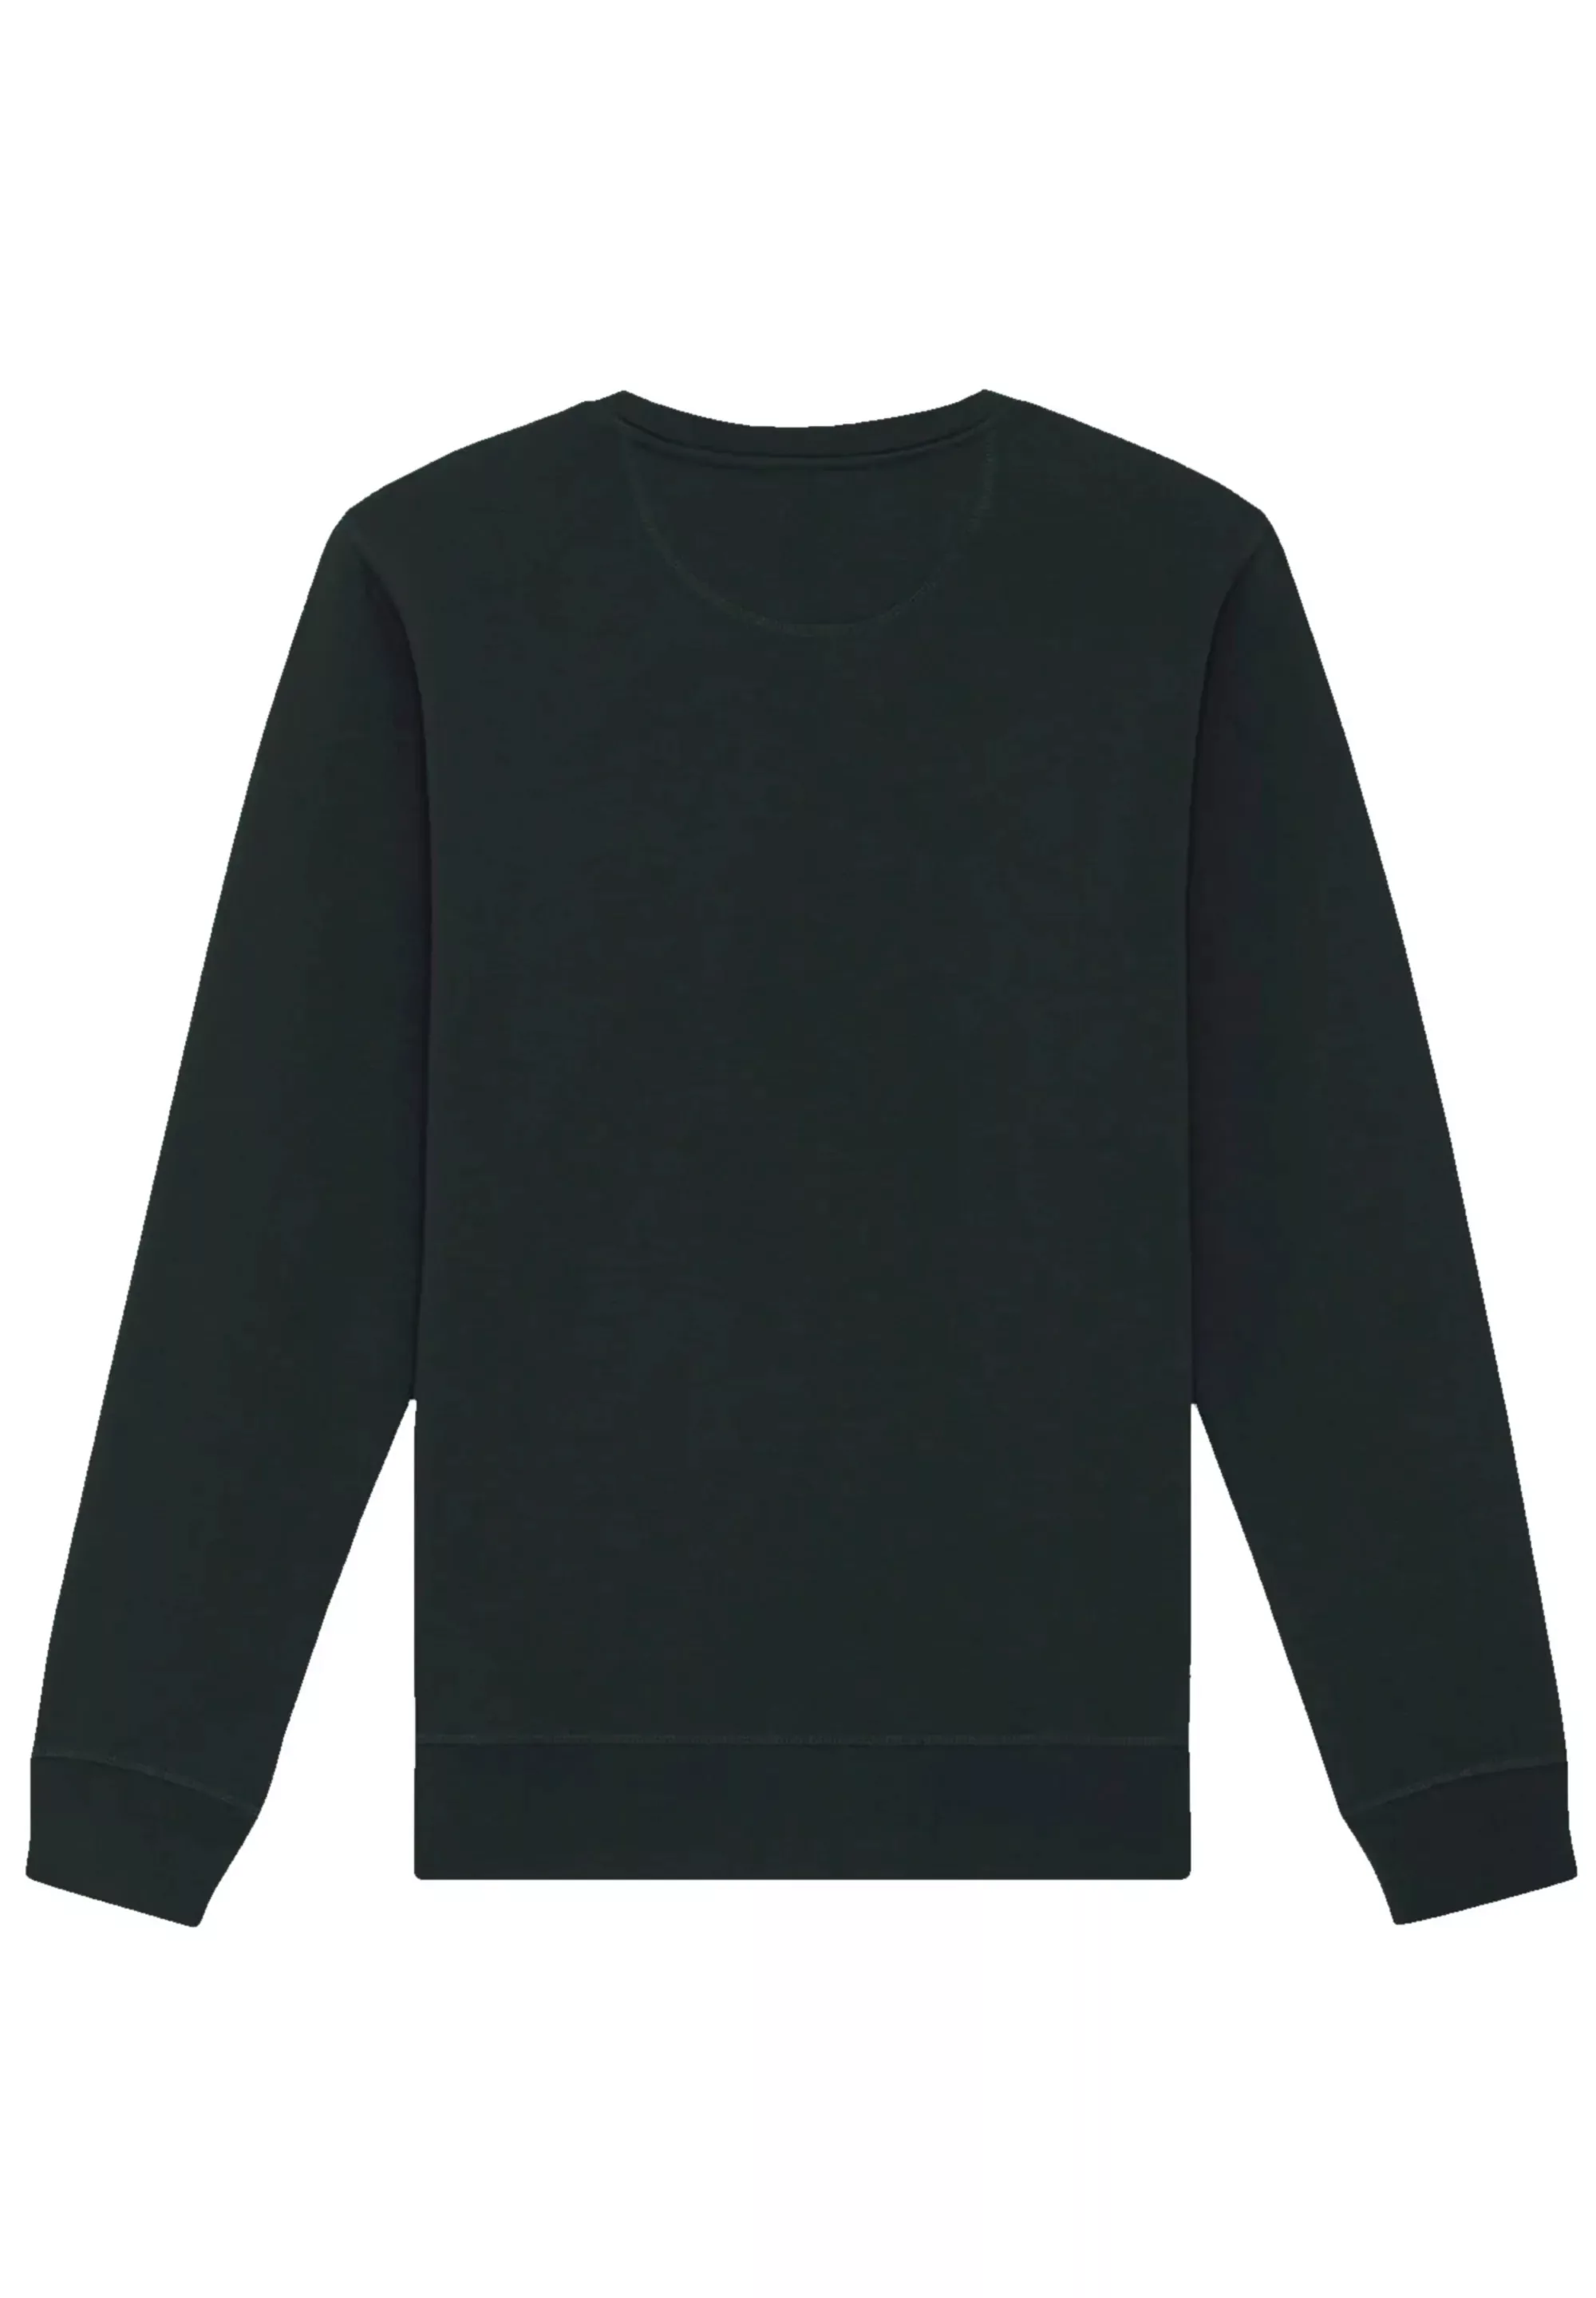 F4NT4STIC Sweatshirt "Go Baltic Knut & Jan Hamburg" günstig online kaufen